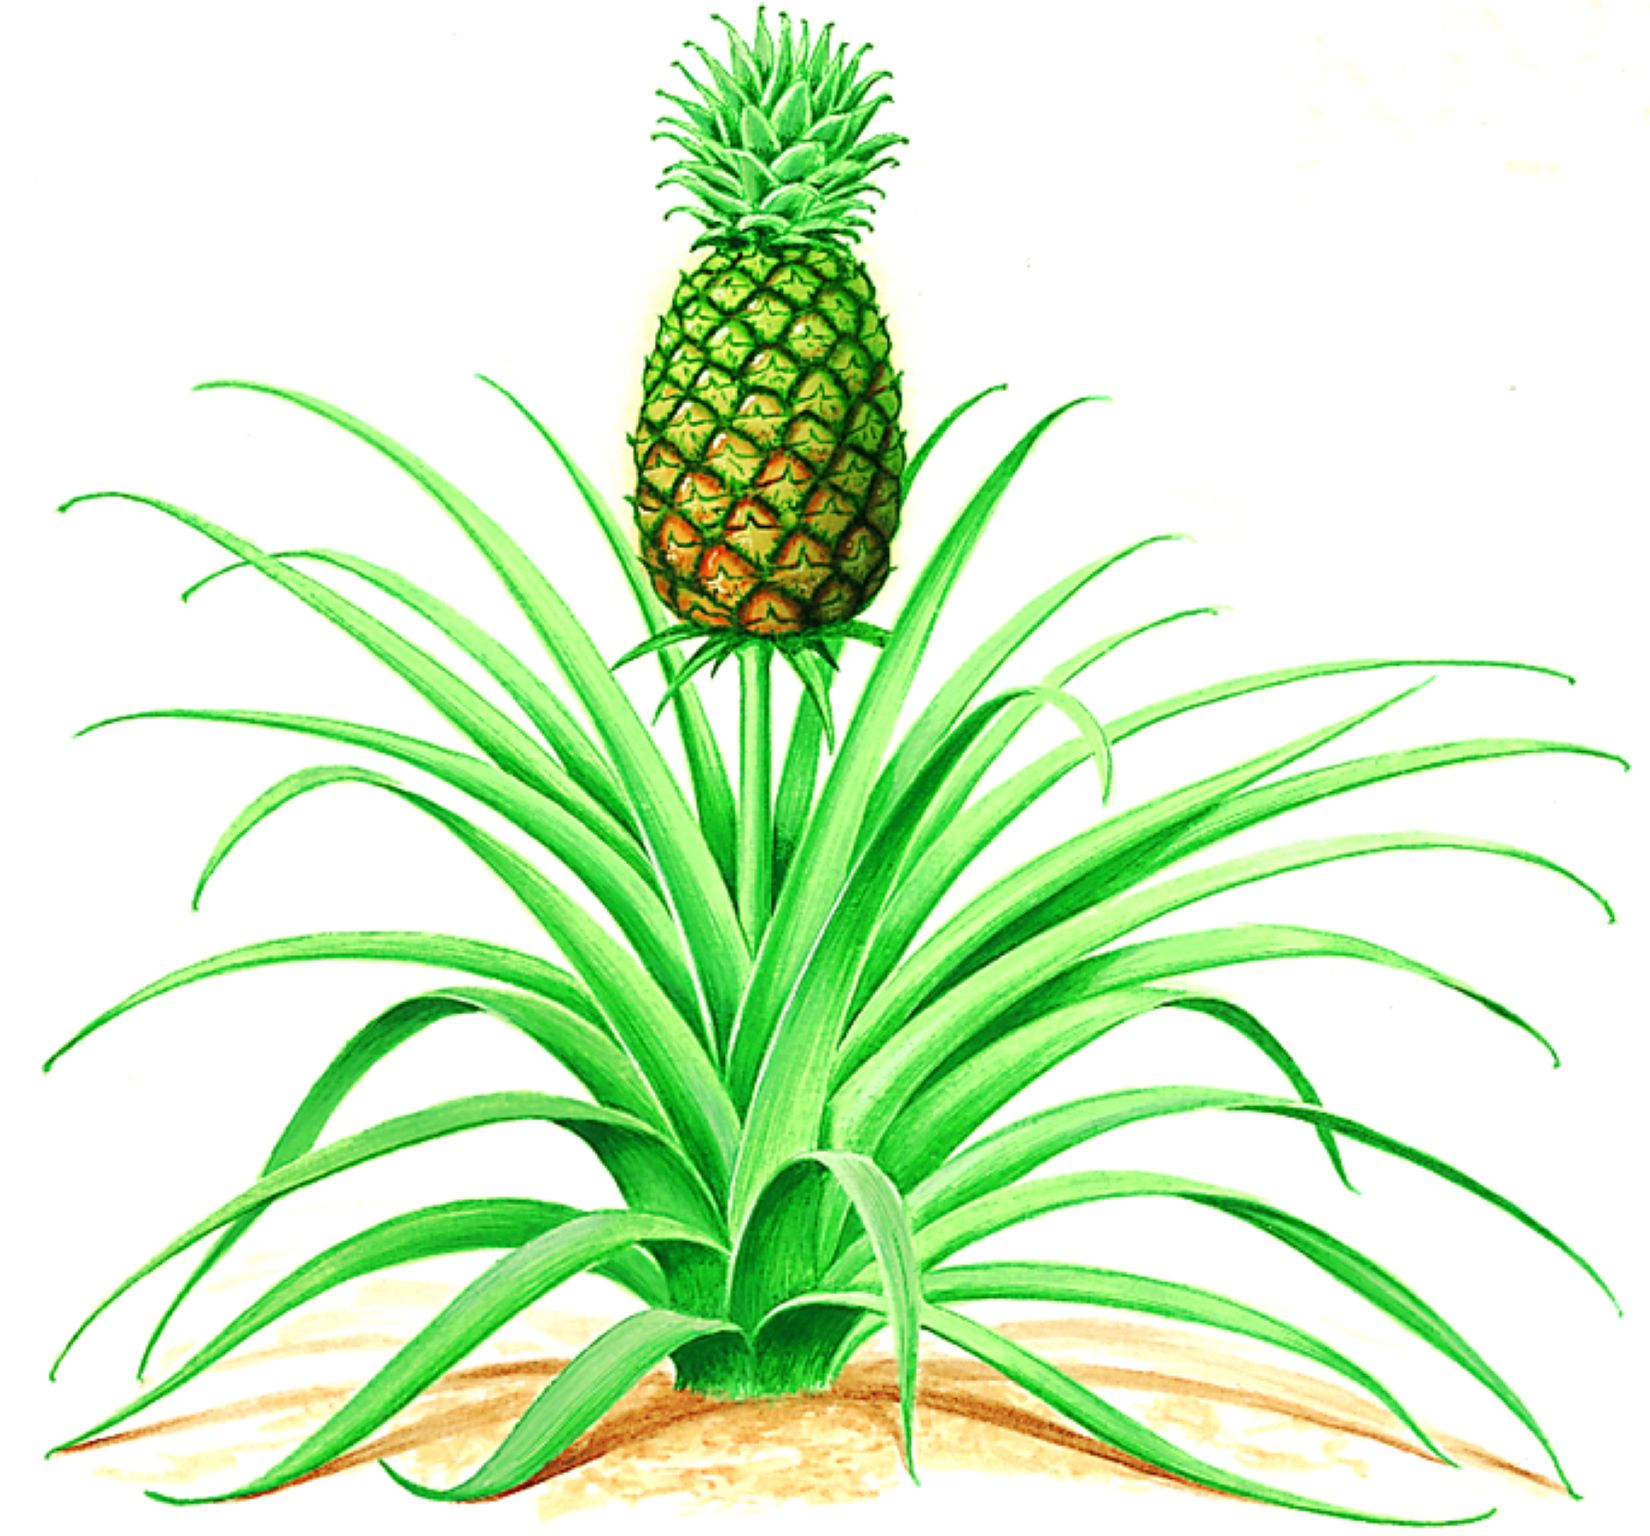 un ananas